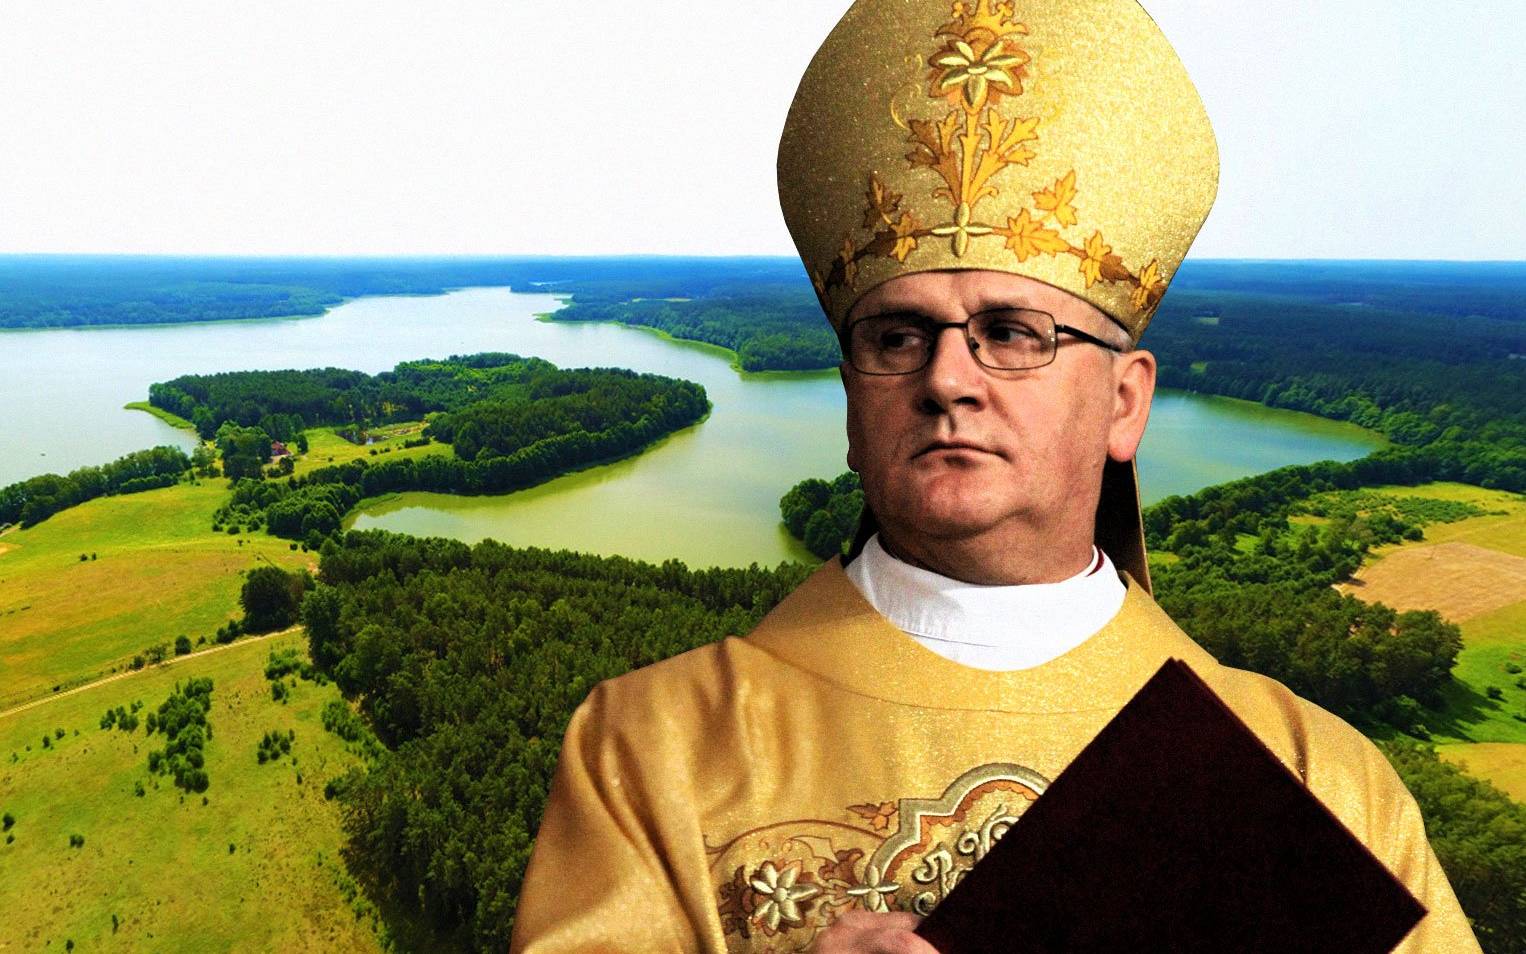 Grafika; Arcybiskup warmiński Józef Górzyński cały na złoto na tle Rybak i Jeziora Łańskiego widzianych z lotu ptaka.